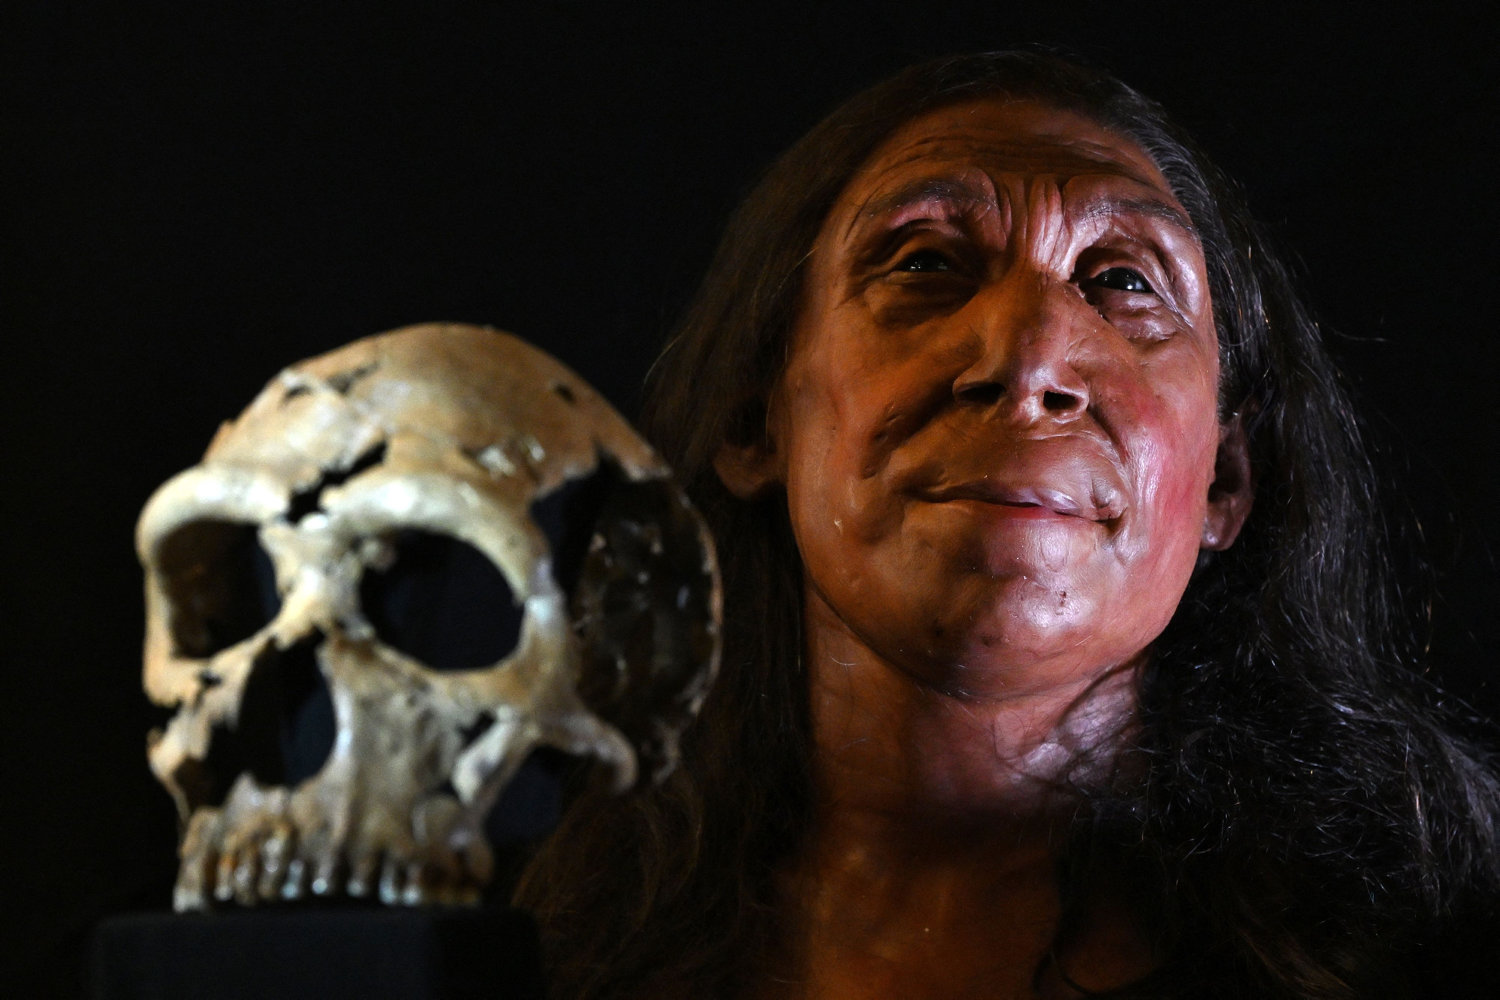 arkæologer genskaber 75.000 år gammel neandertalerkvindes ansigt